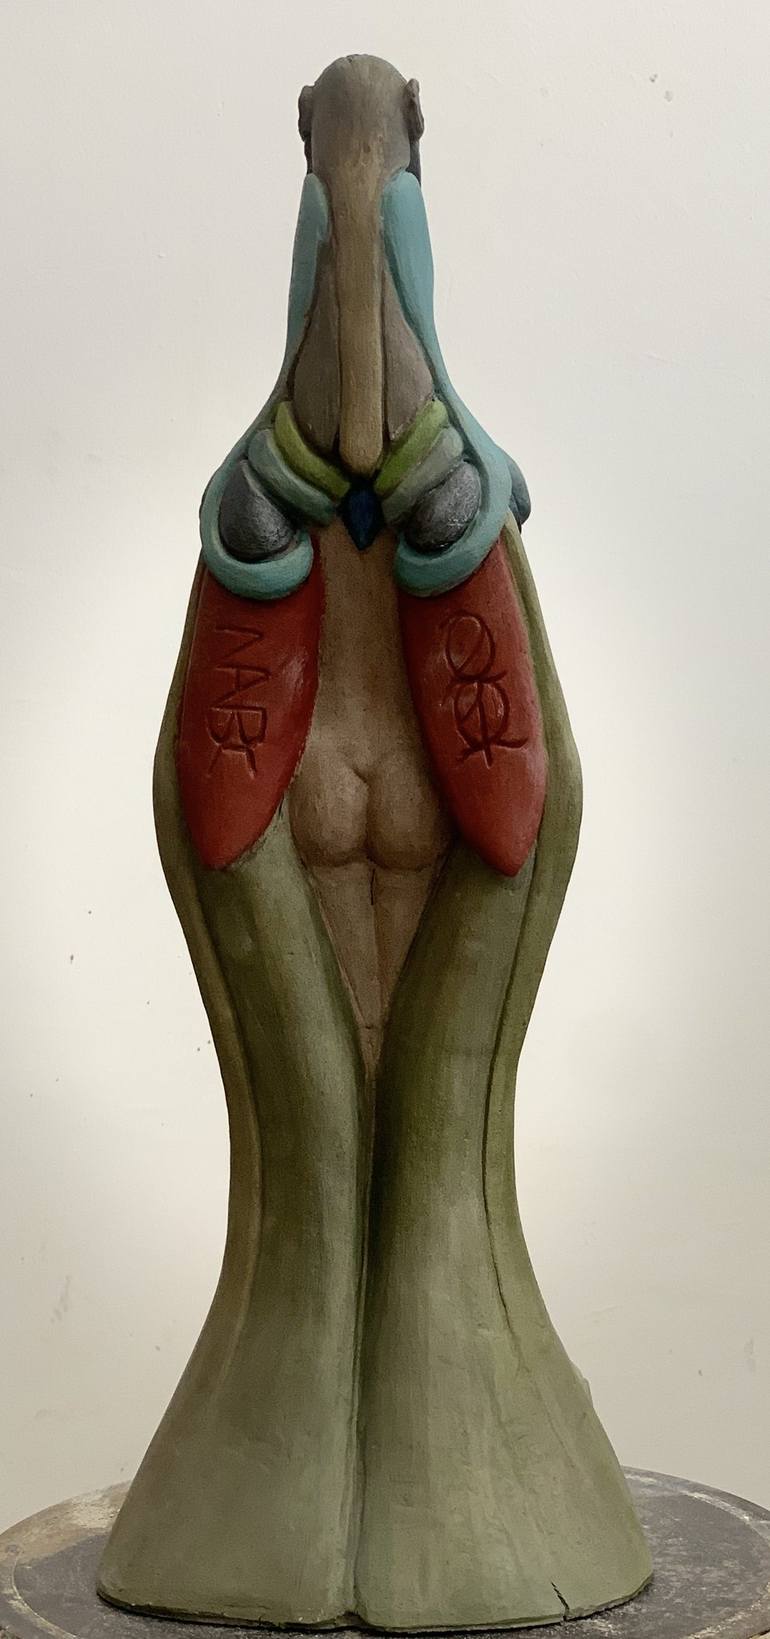 Original Erotic Sculpture by Nanda Stössel